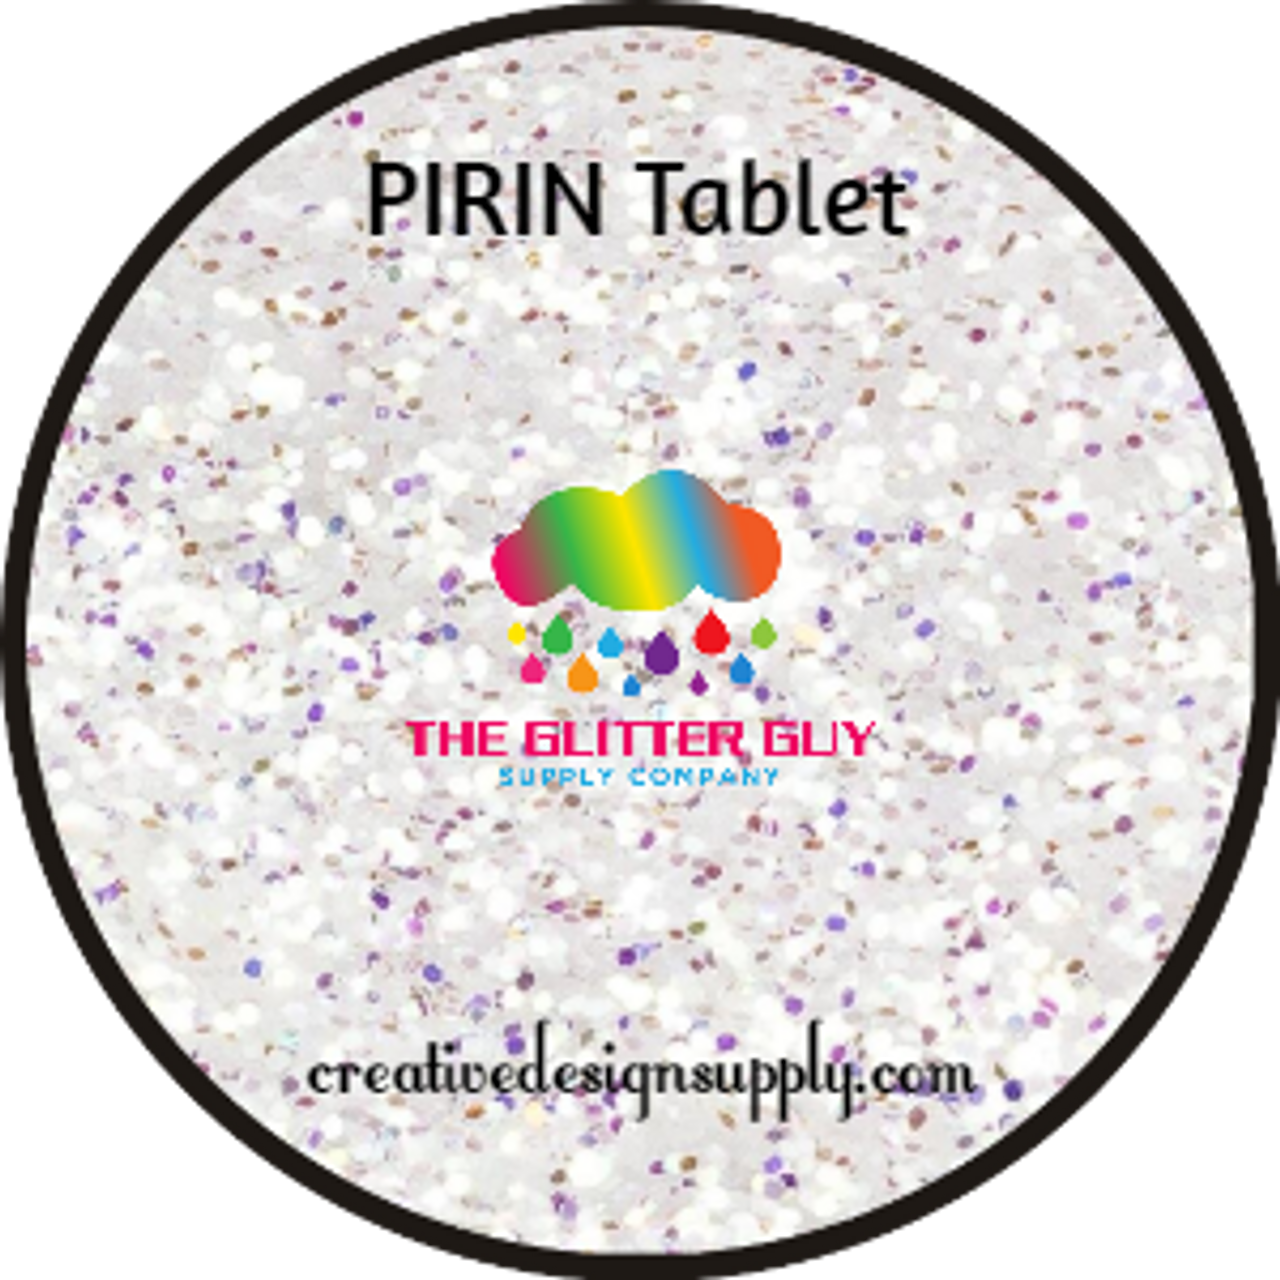 The Glitter Guy | PIRIN Tablet